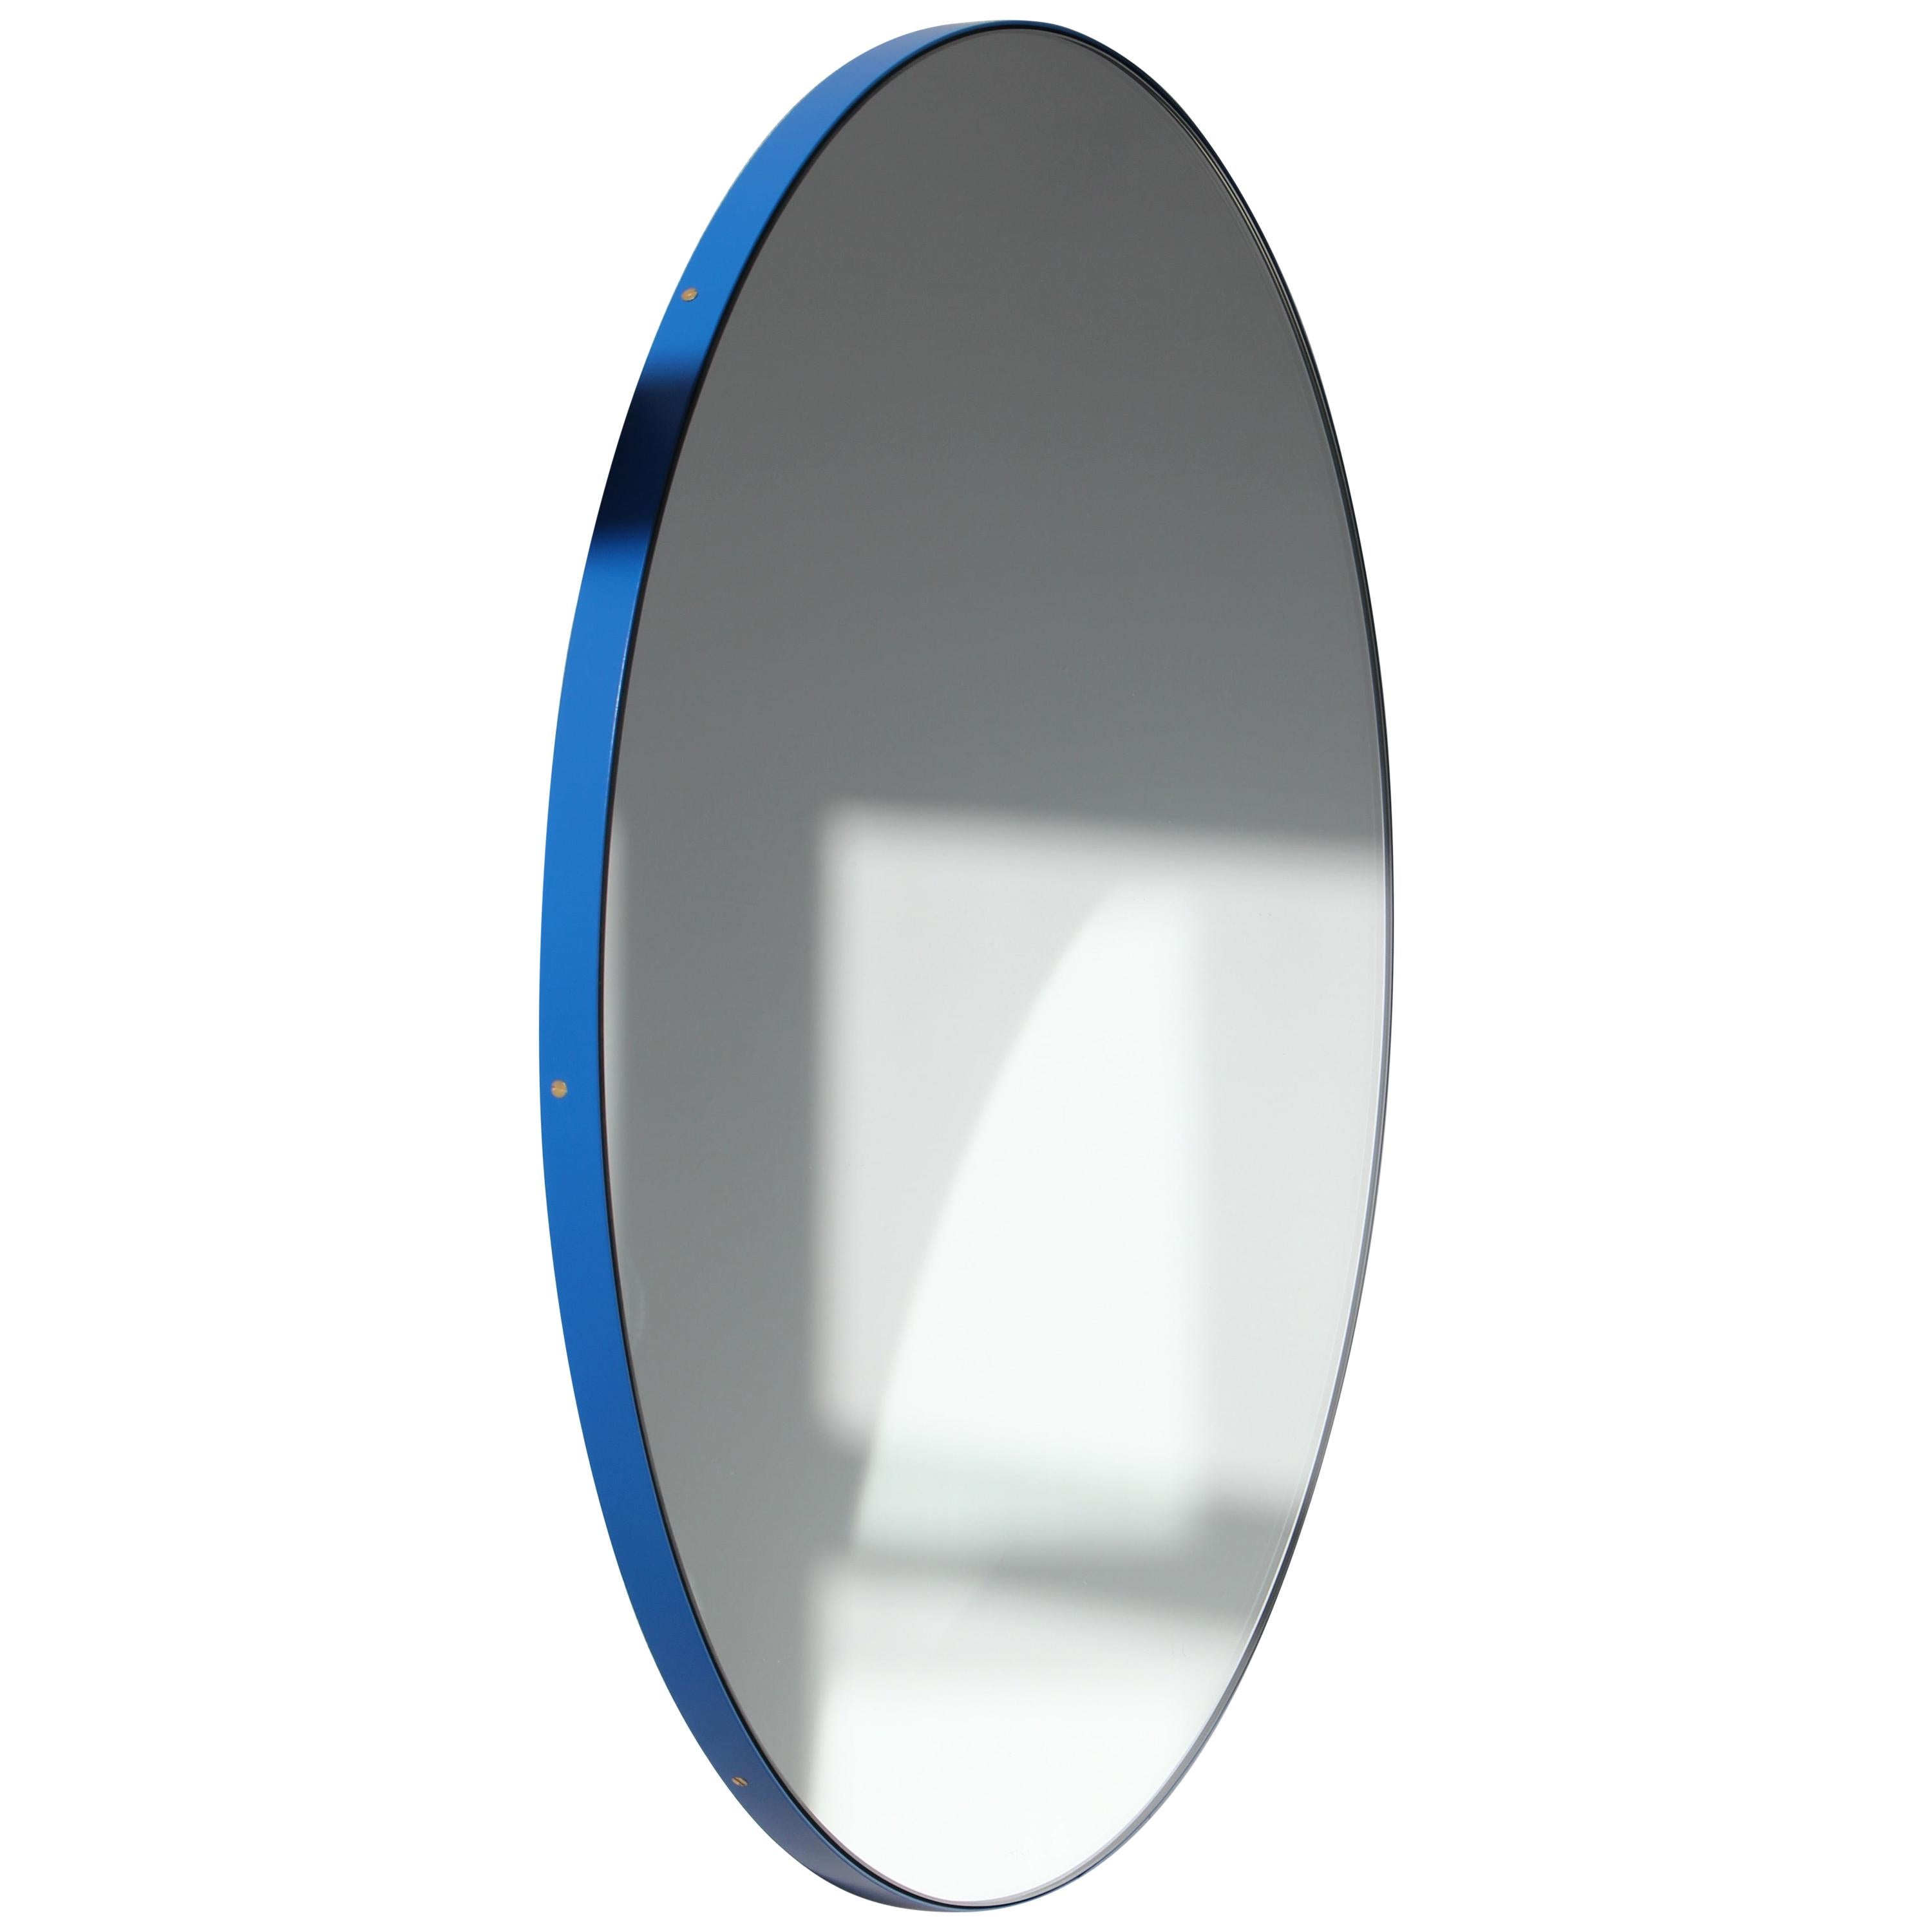 Orbis Runder Moderner Spiegel mit blauem Rahmen, groß